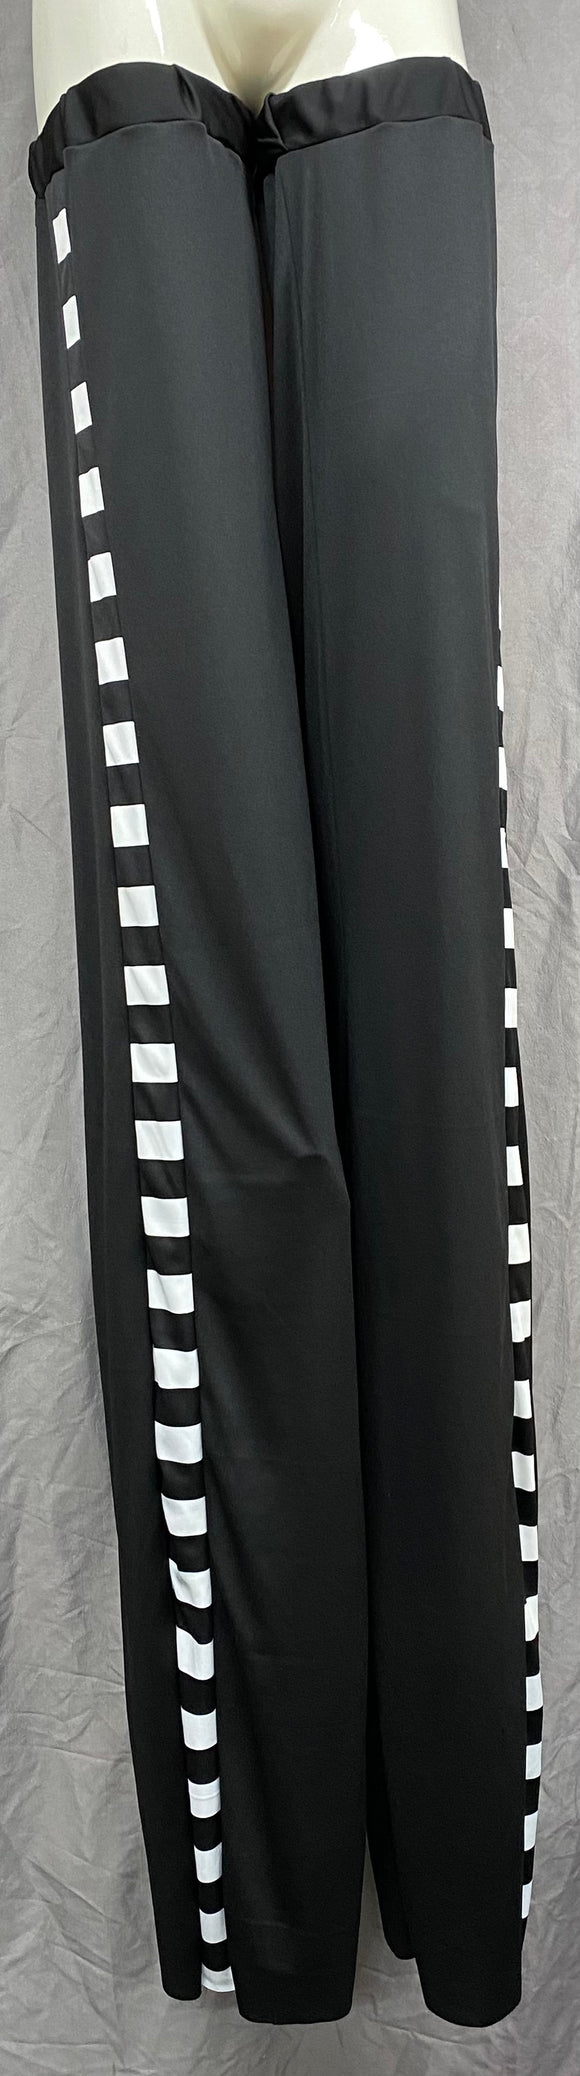 Stilt Covers - Black with White Stripes Matte 61